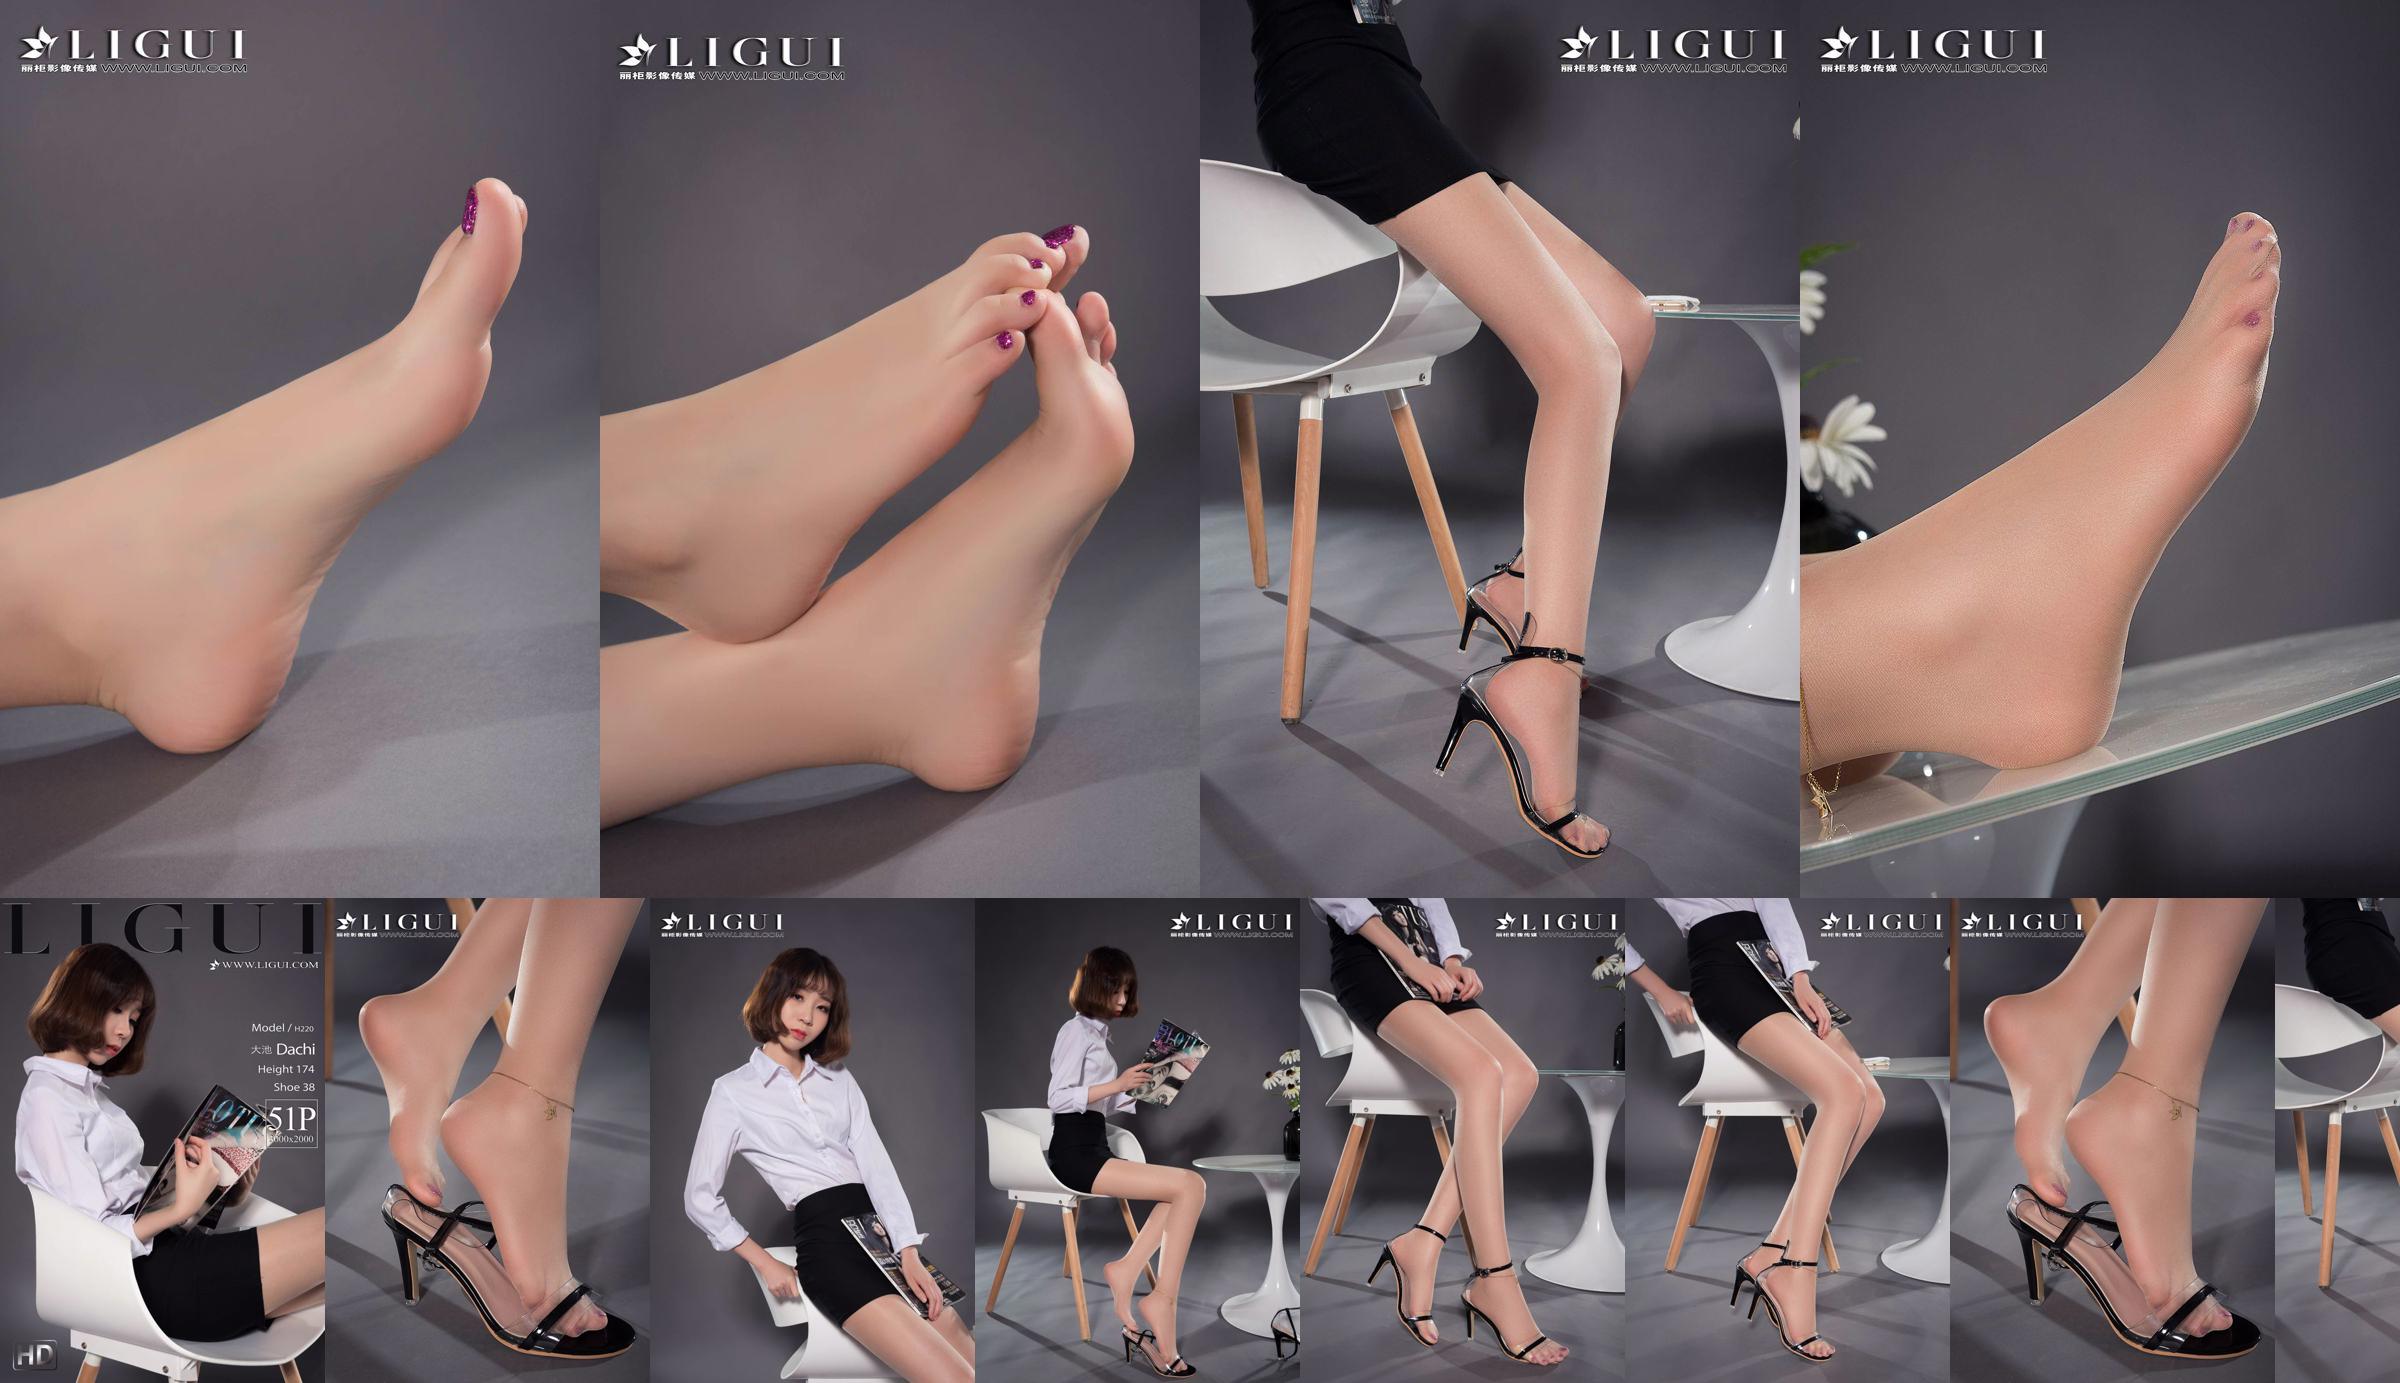 Người mẫu chân Oike "Heo với giày cao gót CV" [Ligui Ligui] Vẻ đẹp Internet No.6a18f0 Trang 1